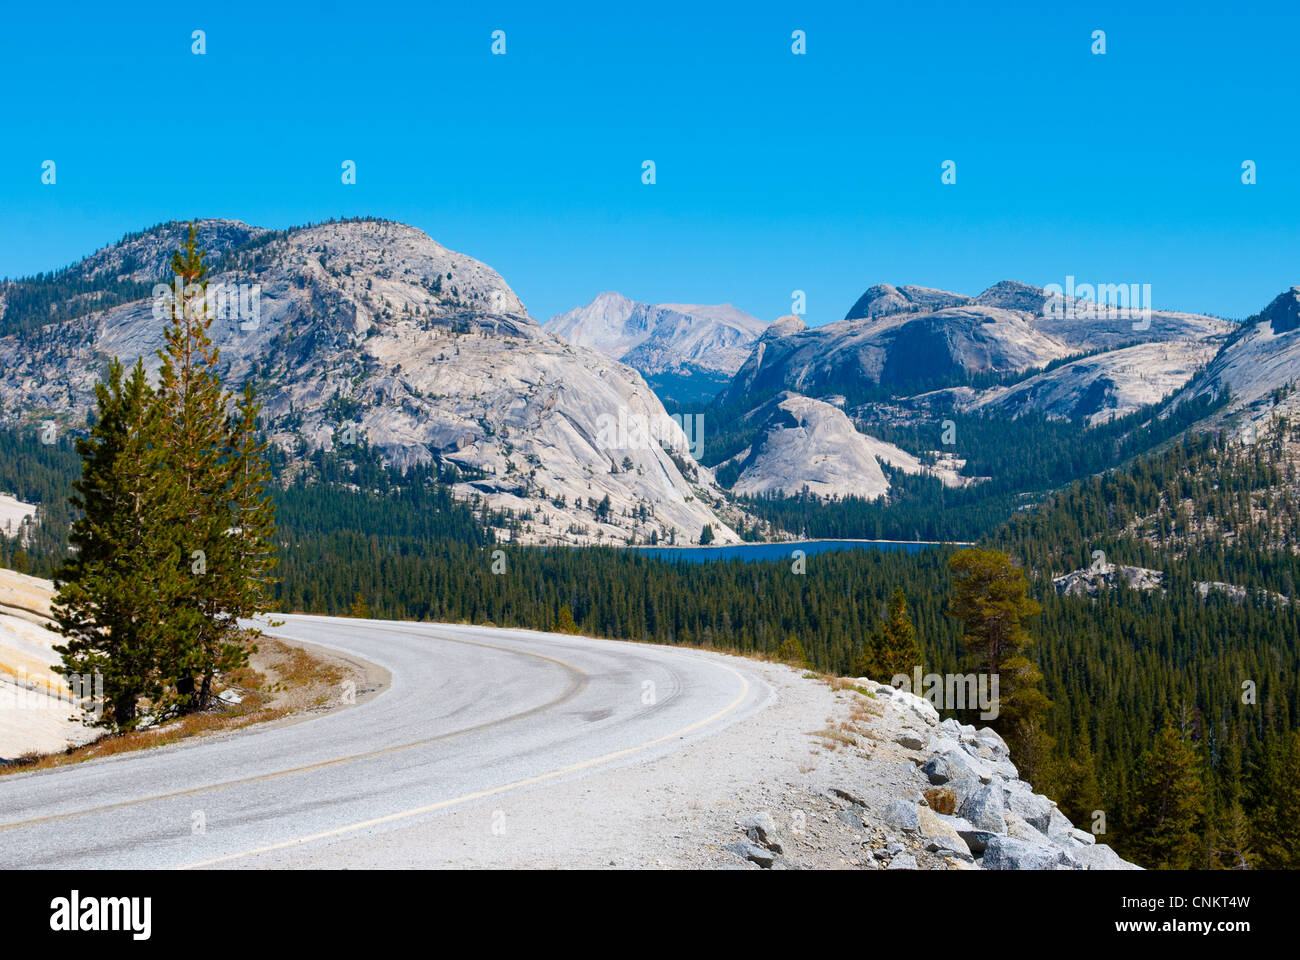 Autostrada 120 nel Parco Nazionale di Yosemite in California, Tioga pass road, Lago Tenaya in background Foto Stock